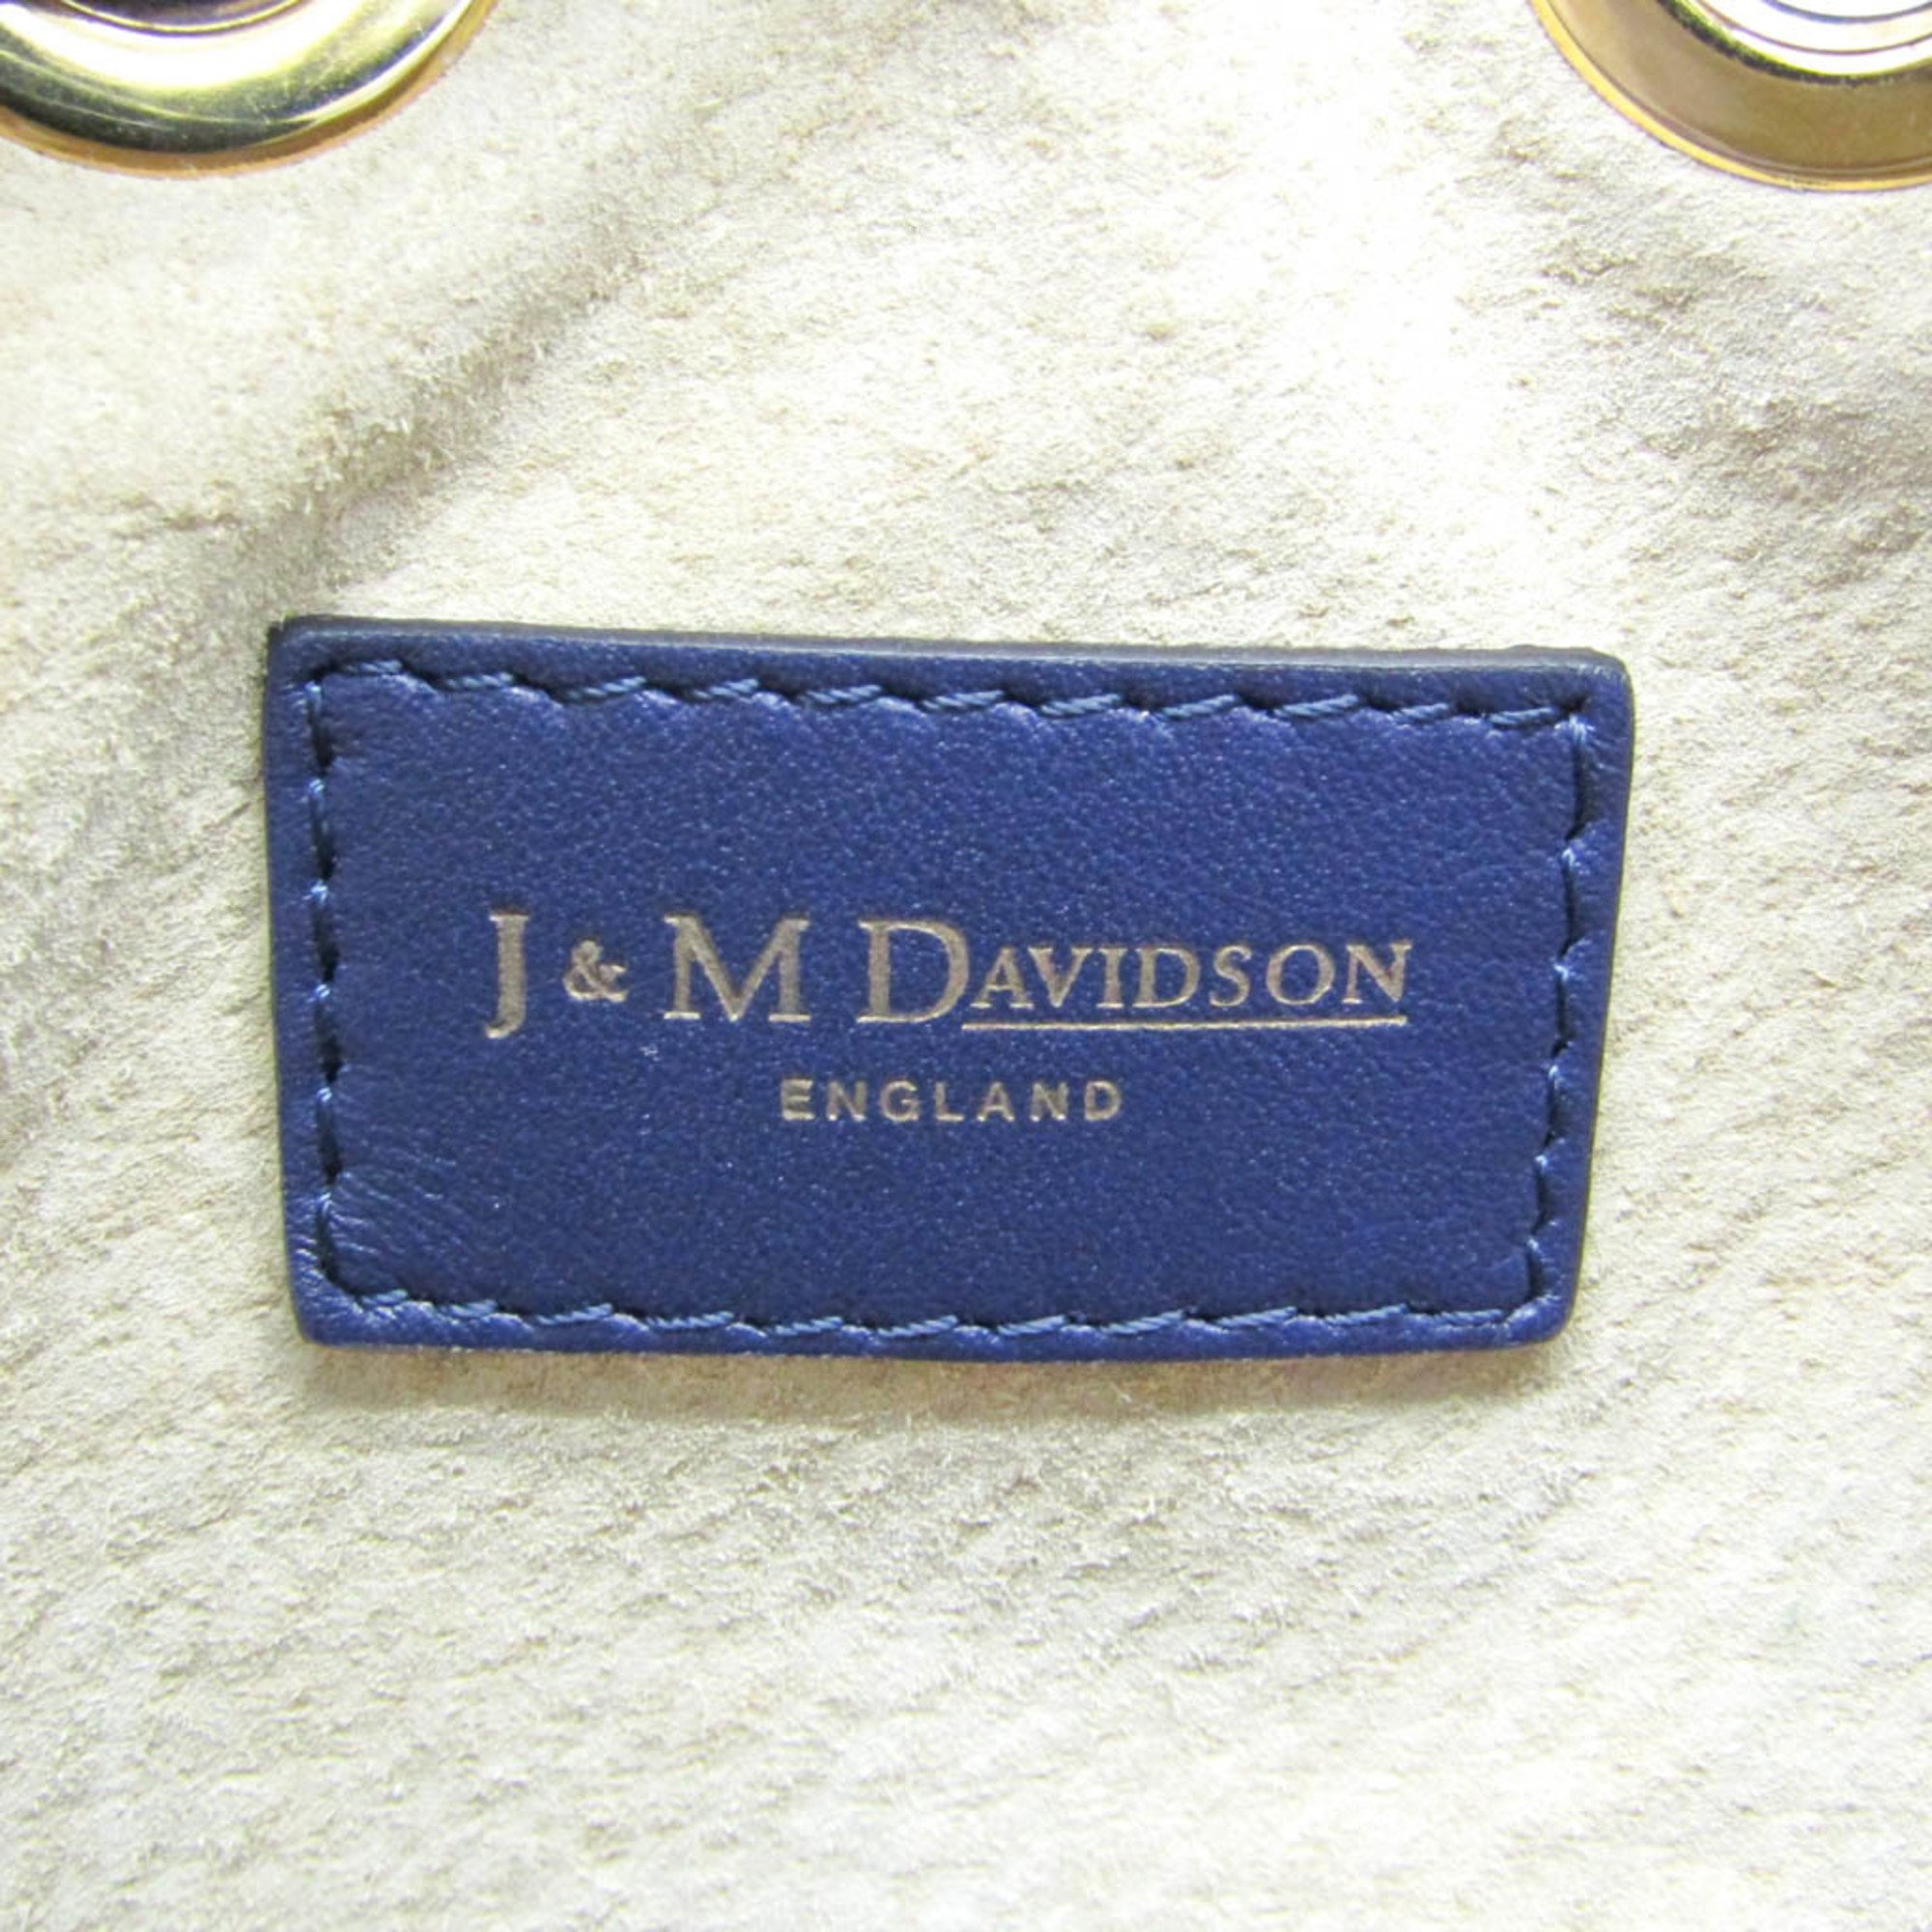 J&M Davidson Carnival Women's Leather Shoulder Bag Navy